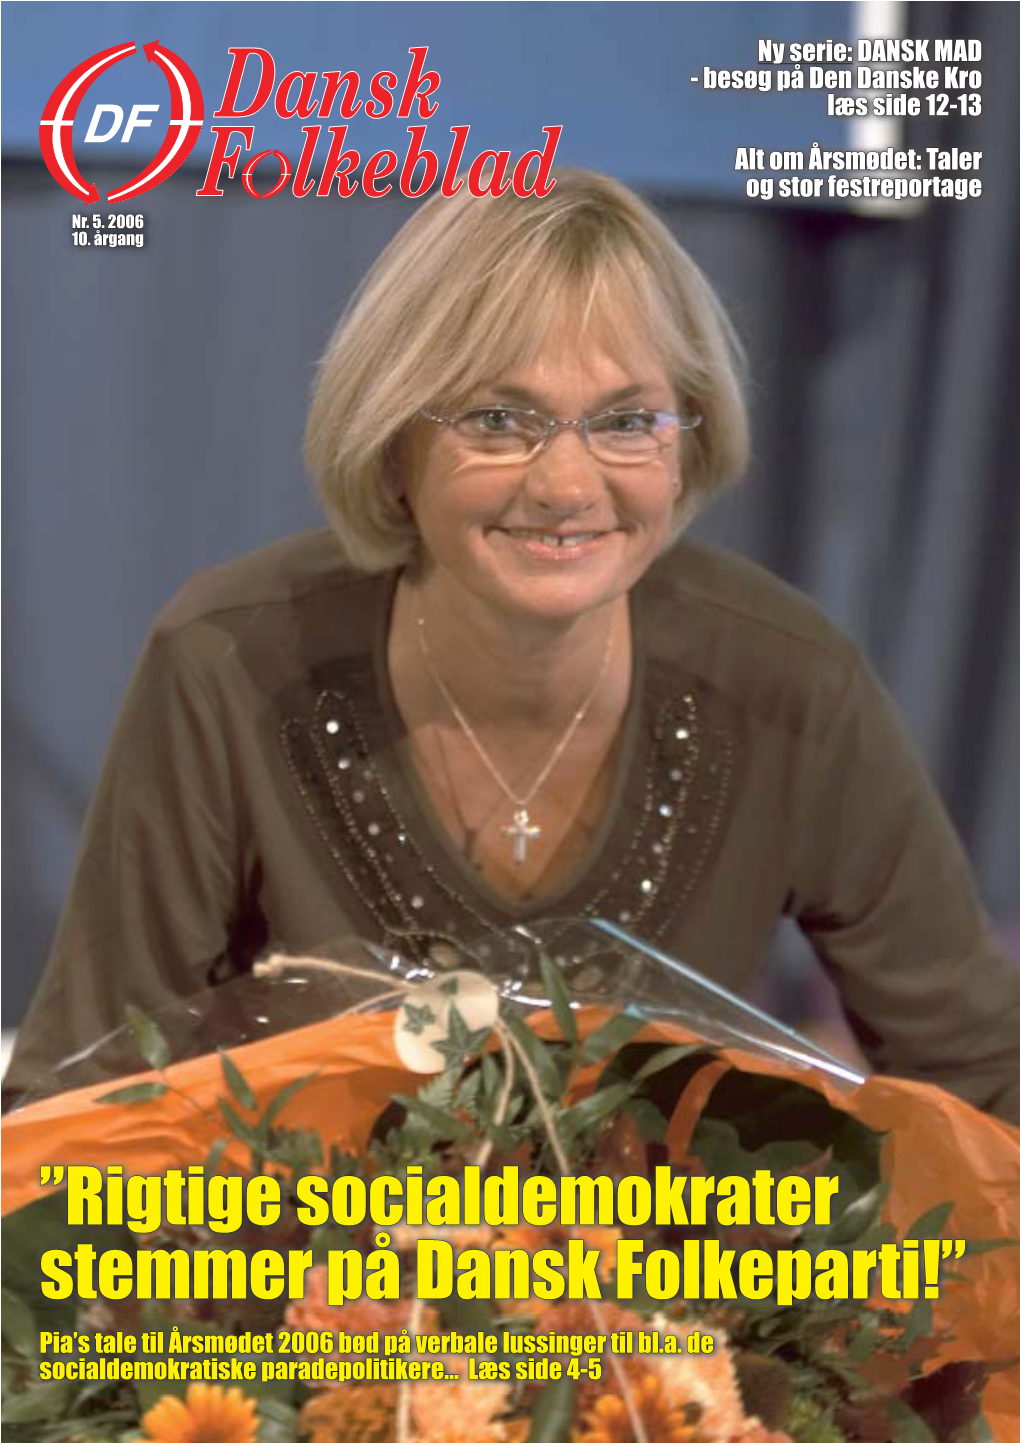 Rigtige Socialdemokrater Stemmer På Dansk Folkeparti!”